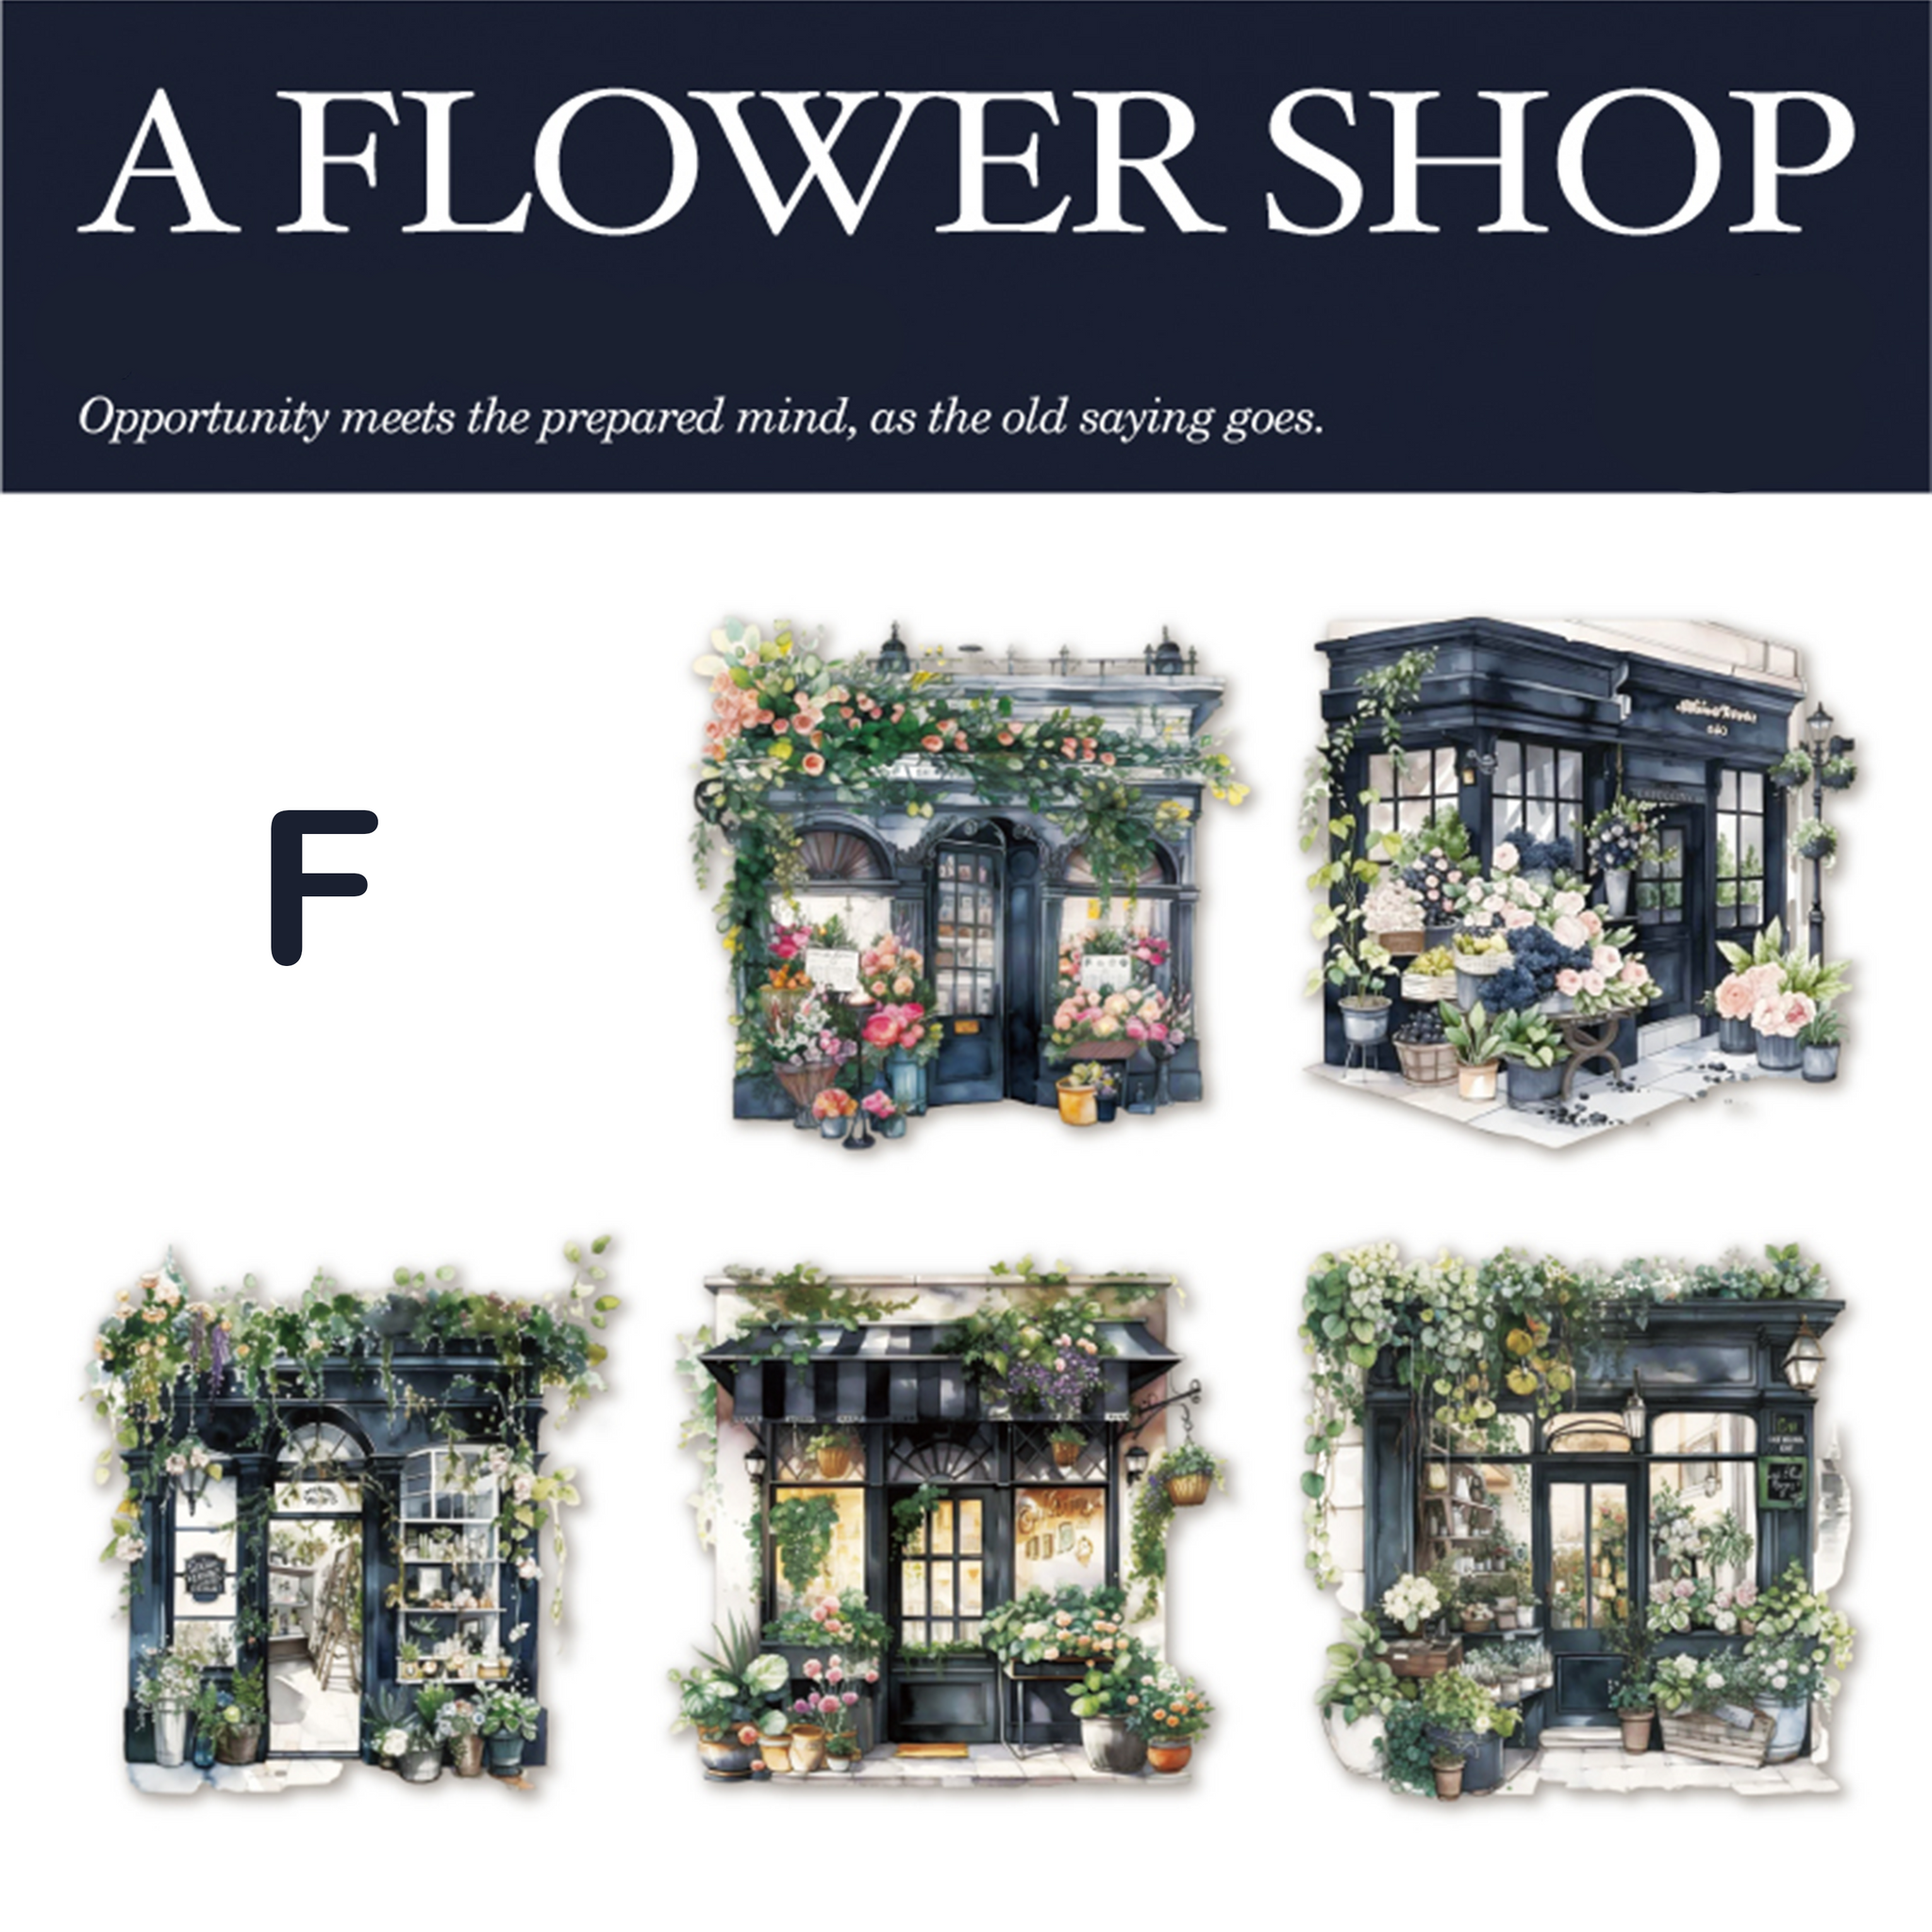 The flower shop PET Sticker